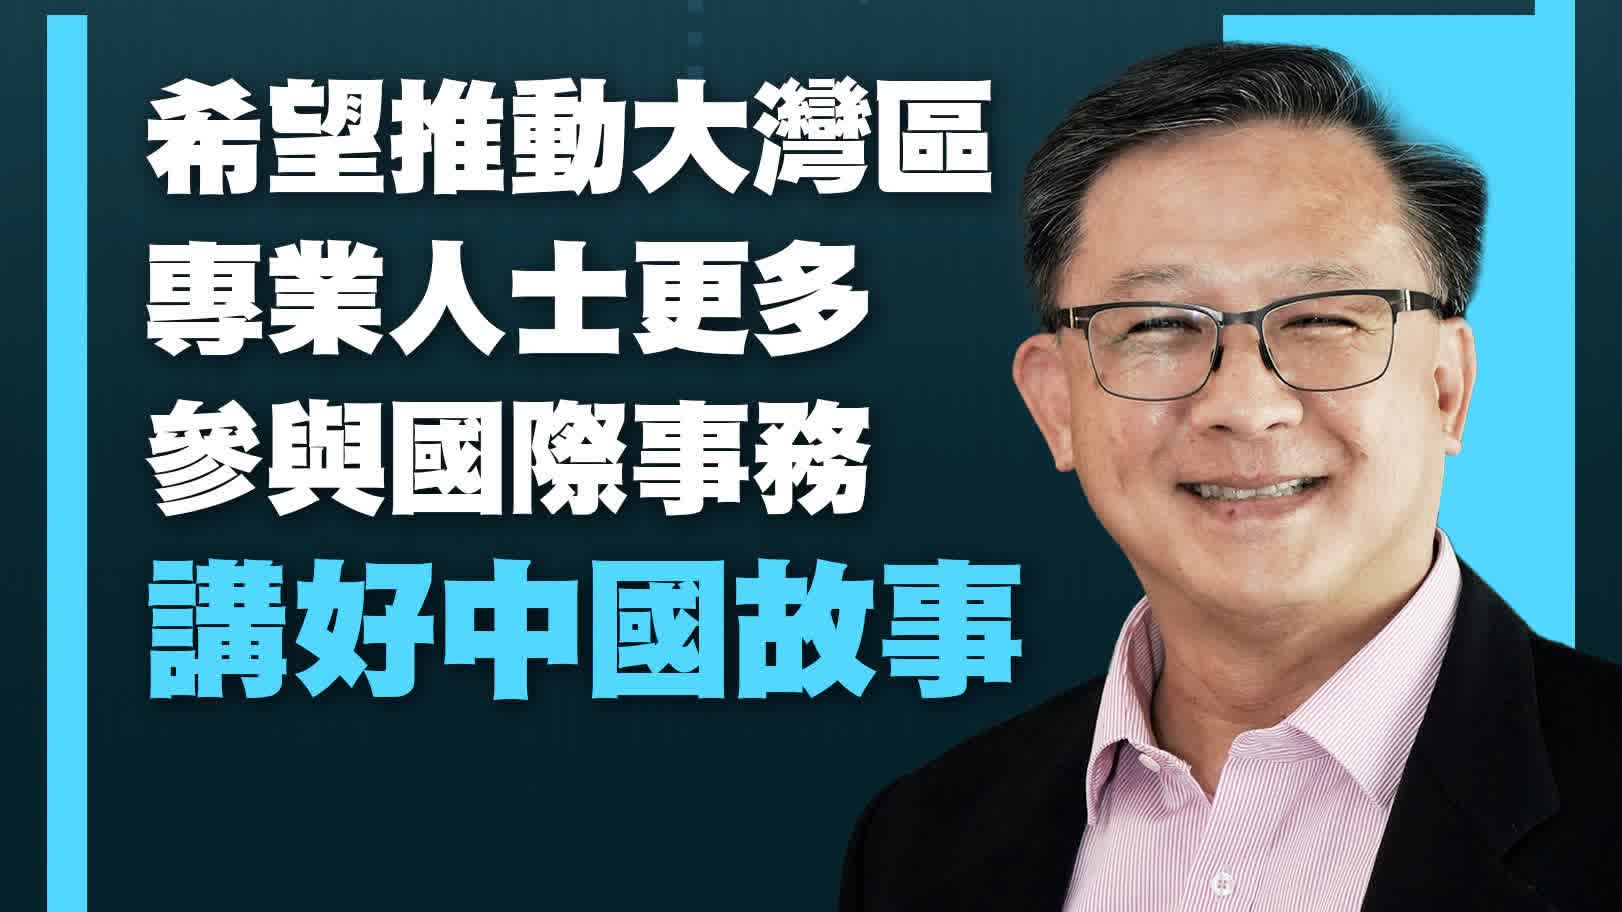 成為十四屆全國政協委員後，香港律師何君堯早早地進入了他的新角色。接受羊城晚報記者的採訪時，他重點提到了本次參會提交的提案。